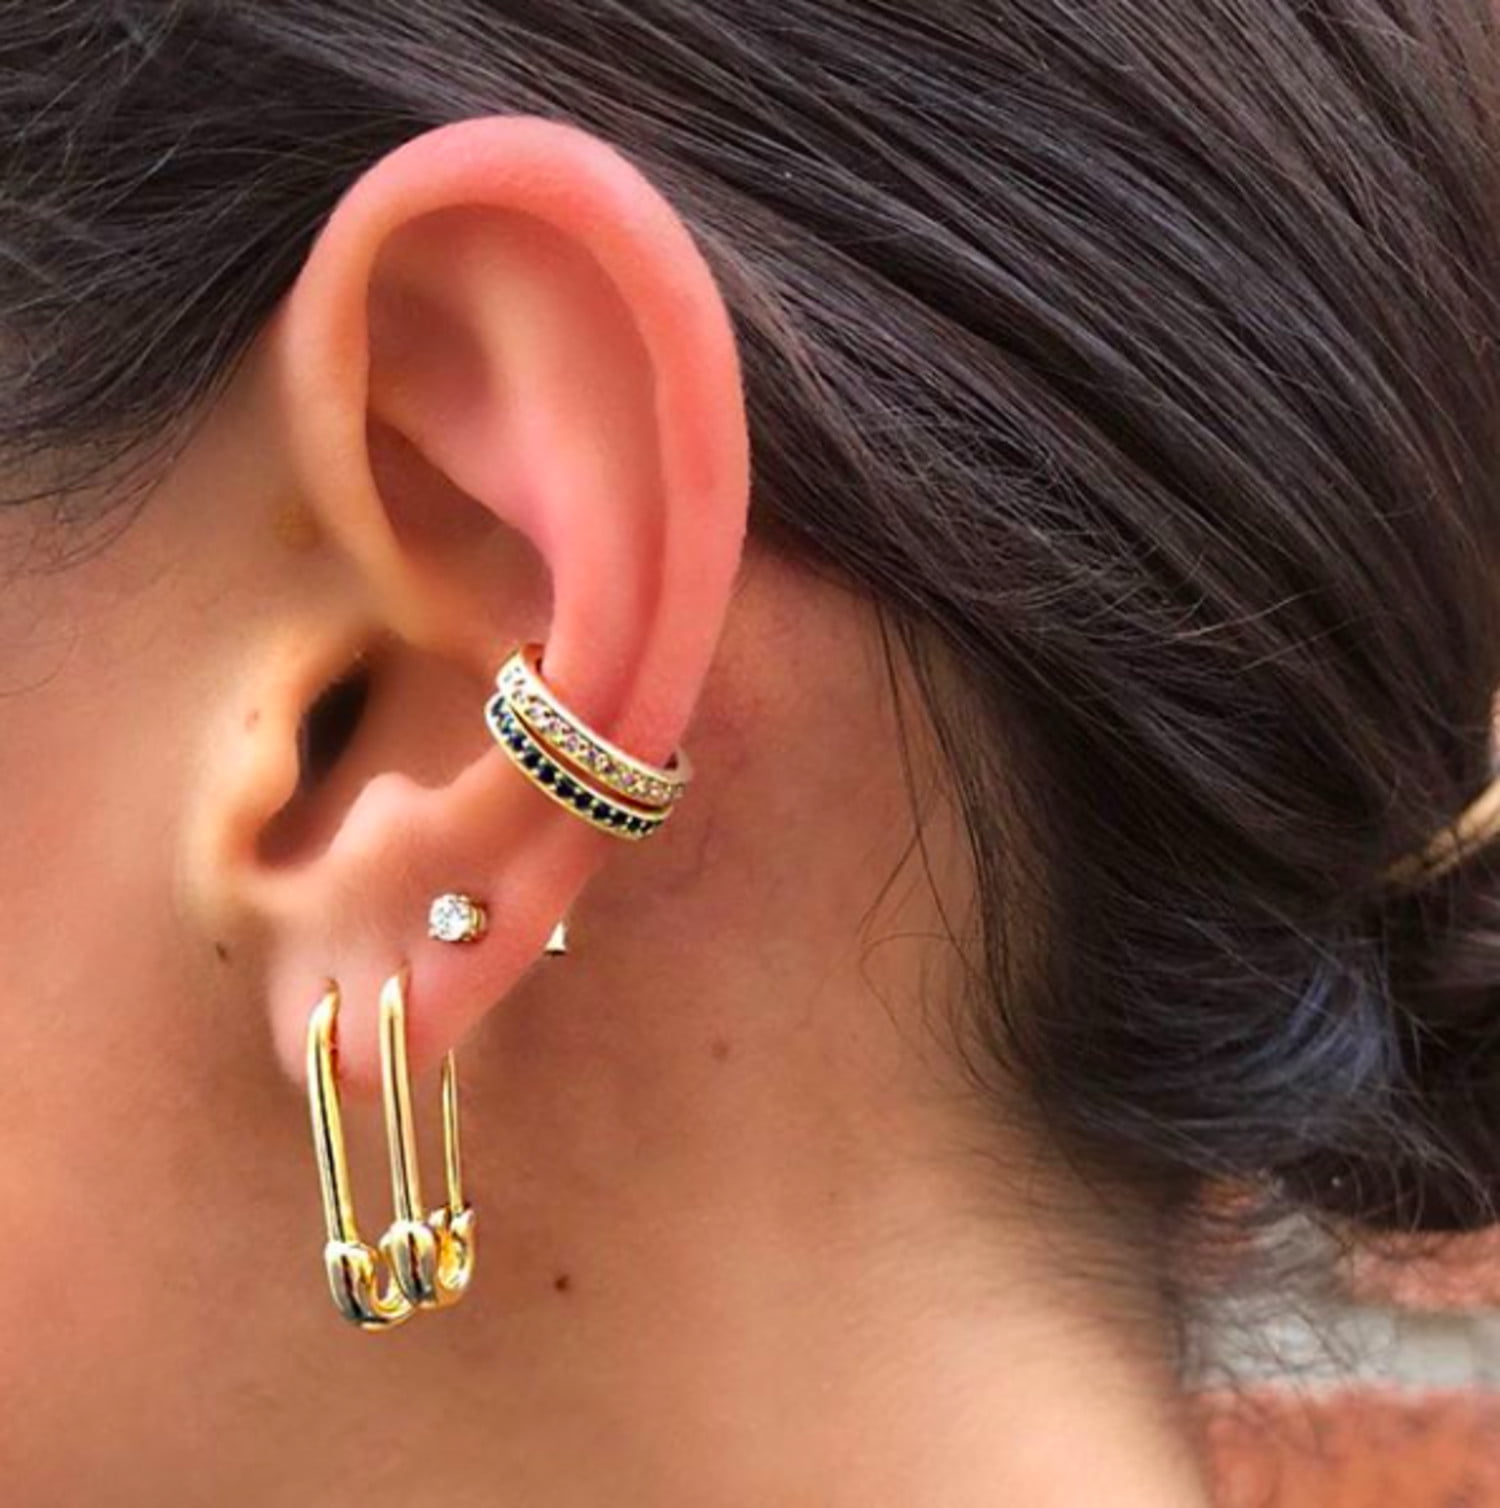 Gold Chain Earrings Gold Ear Cuff Ear Pin 18k Gold Earrings Ear Climbers  Rose Gold Ear Cuffs Rose Gold Pin Earrings Over The Ear Earrings